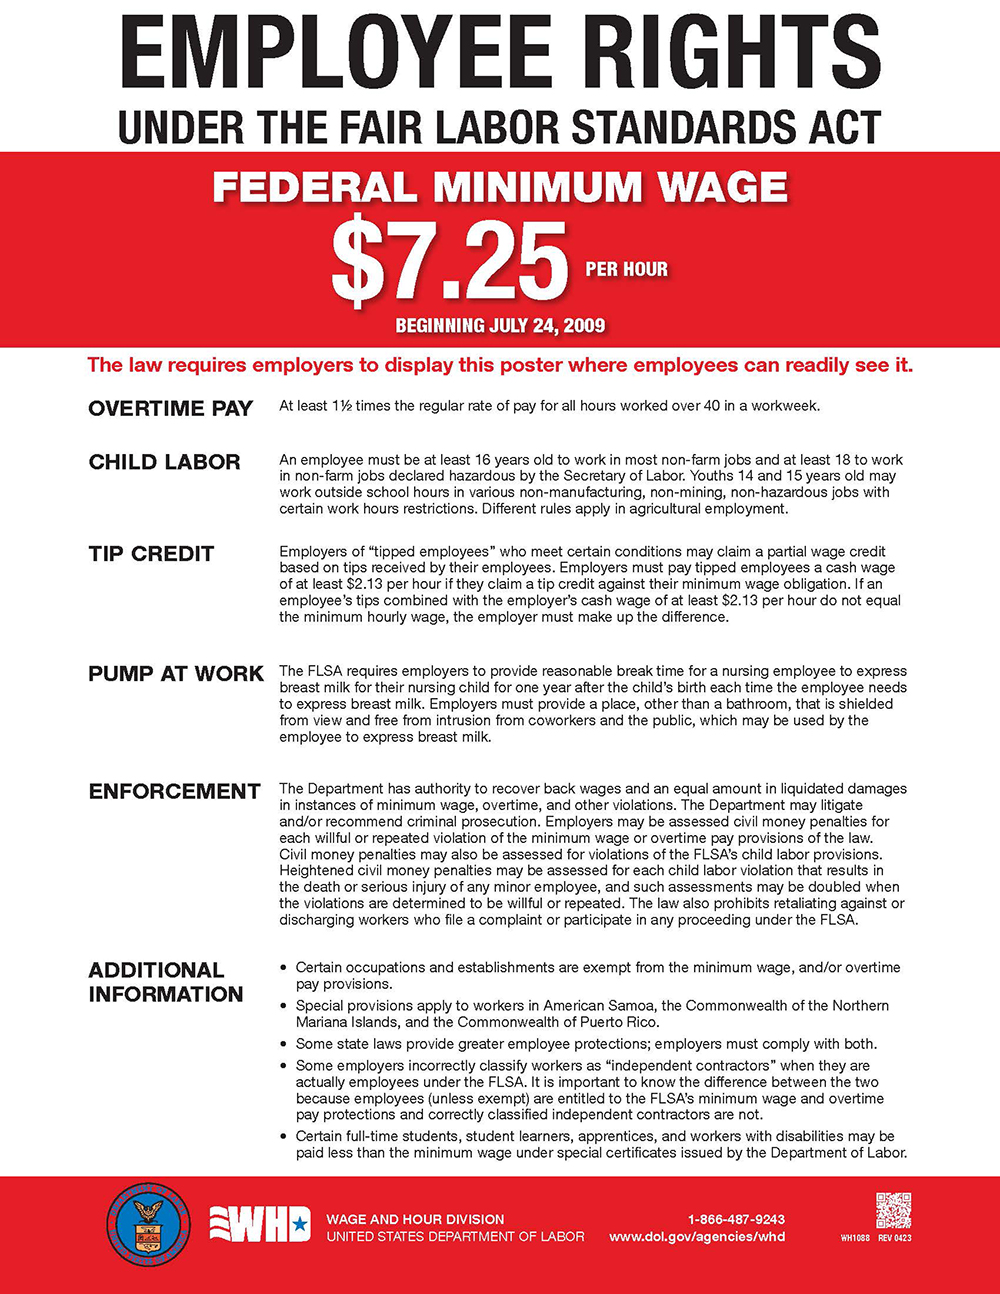 Federal Minimum Wage